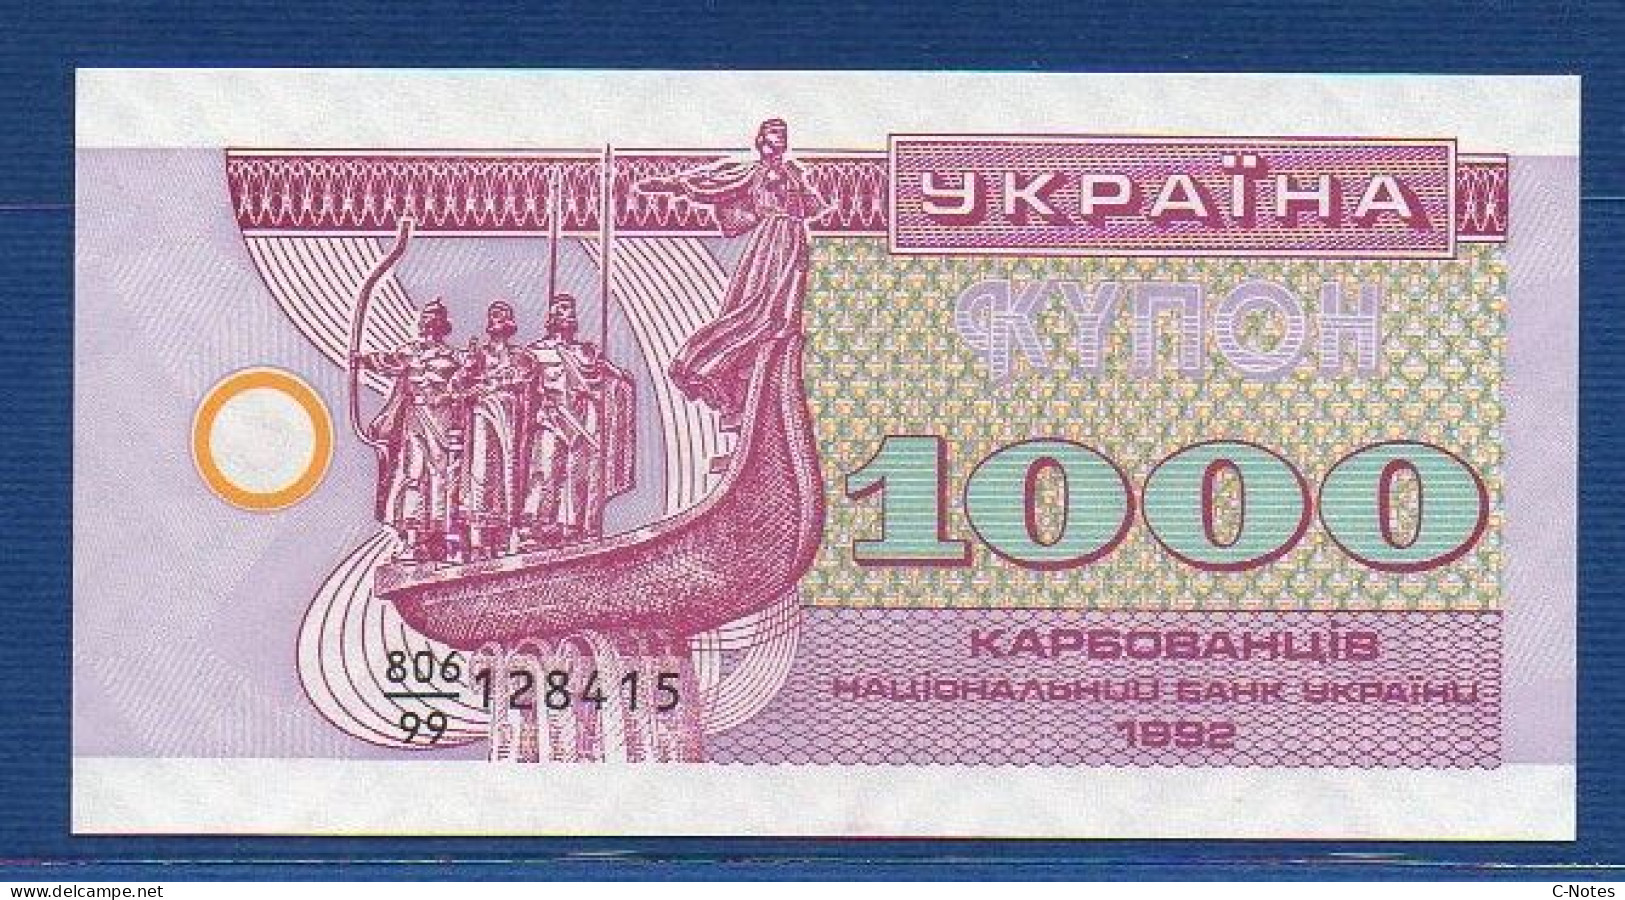 UKRAINE - P. 91r – 1.000 1000 Ukraïns'kih Karbovantsiv 1992 UNC, S/n 806/99 128415 Replacement - Ukraine